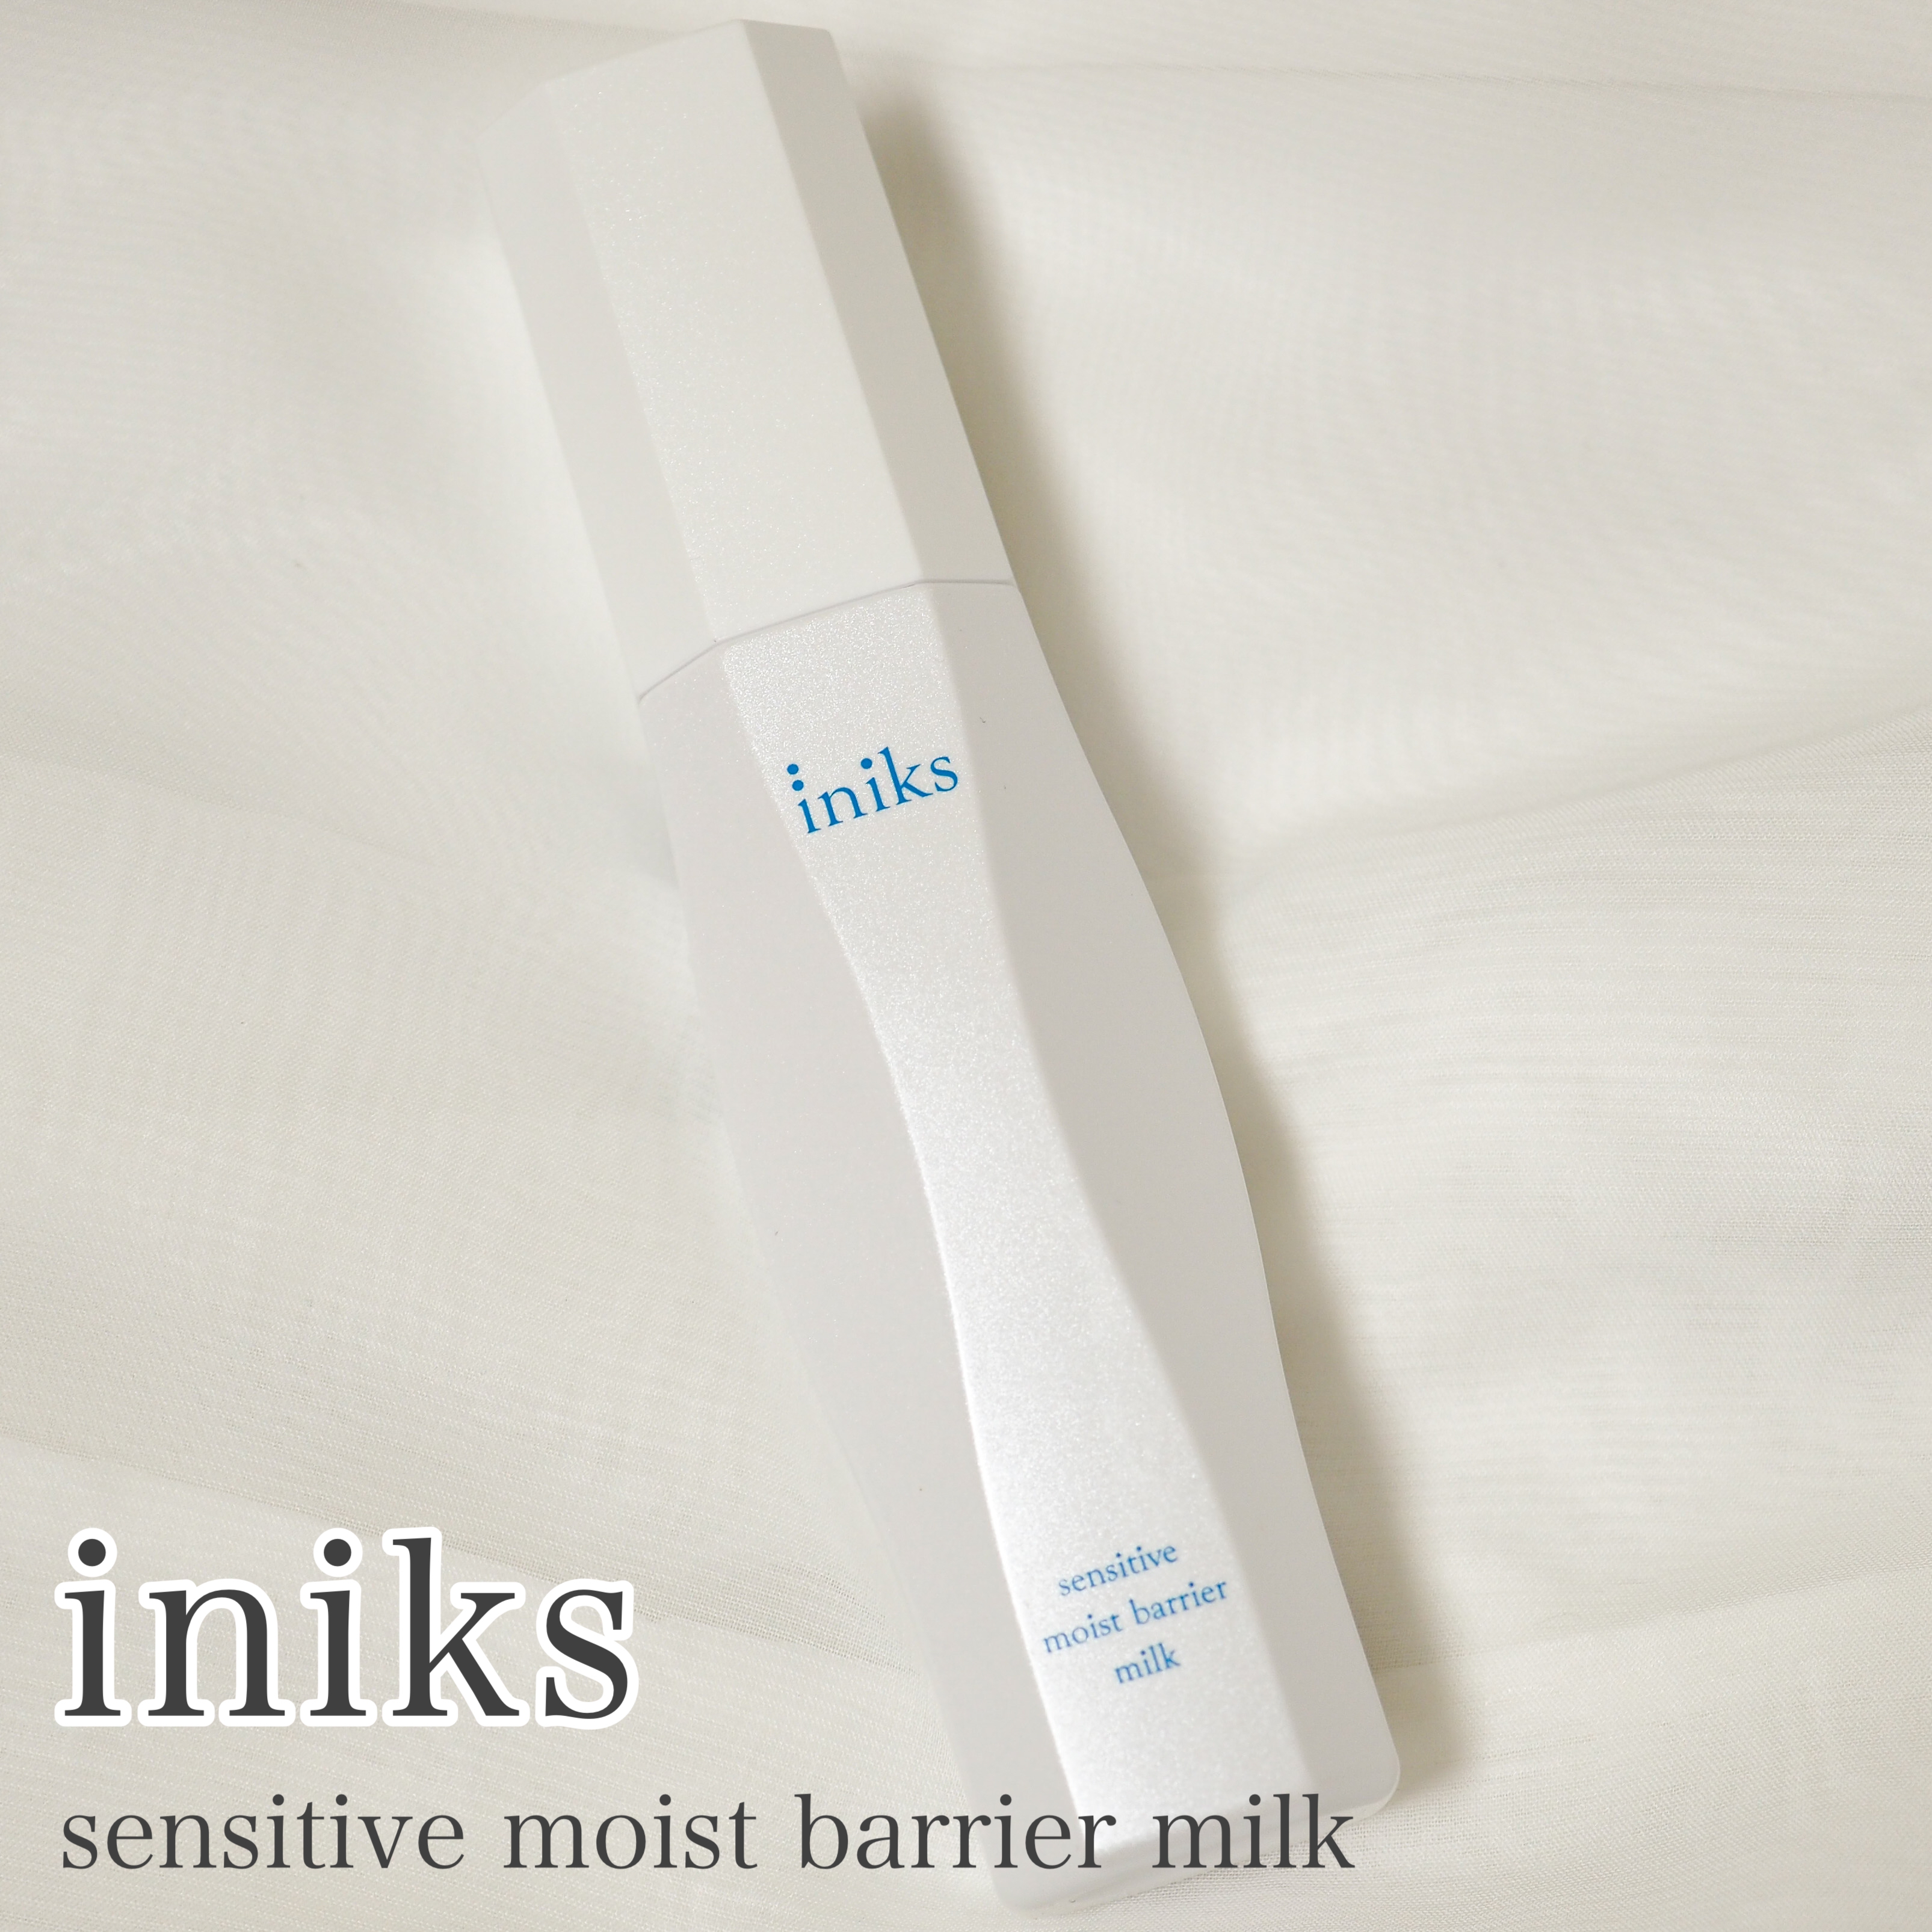 iniks(イニクス) センシティブ モイストバリア ミルクの良い点・メリットに関するaquaさんの口コミ画像1